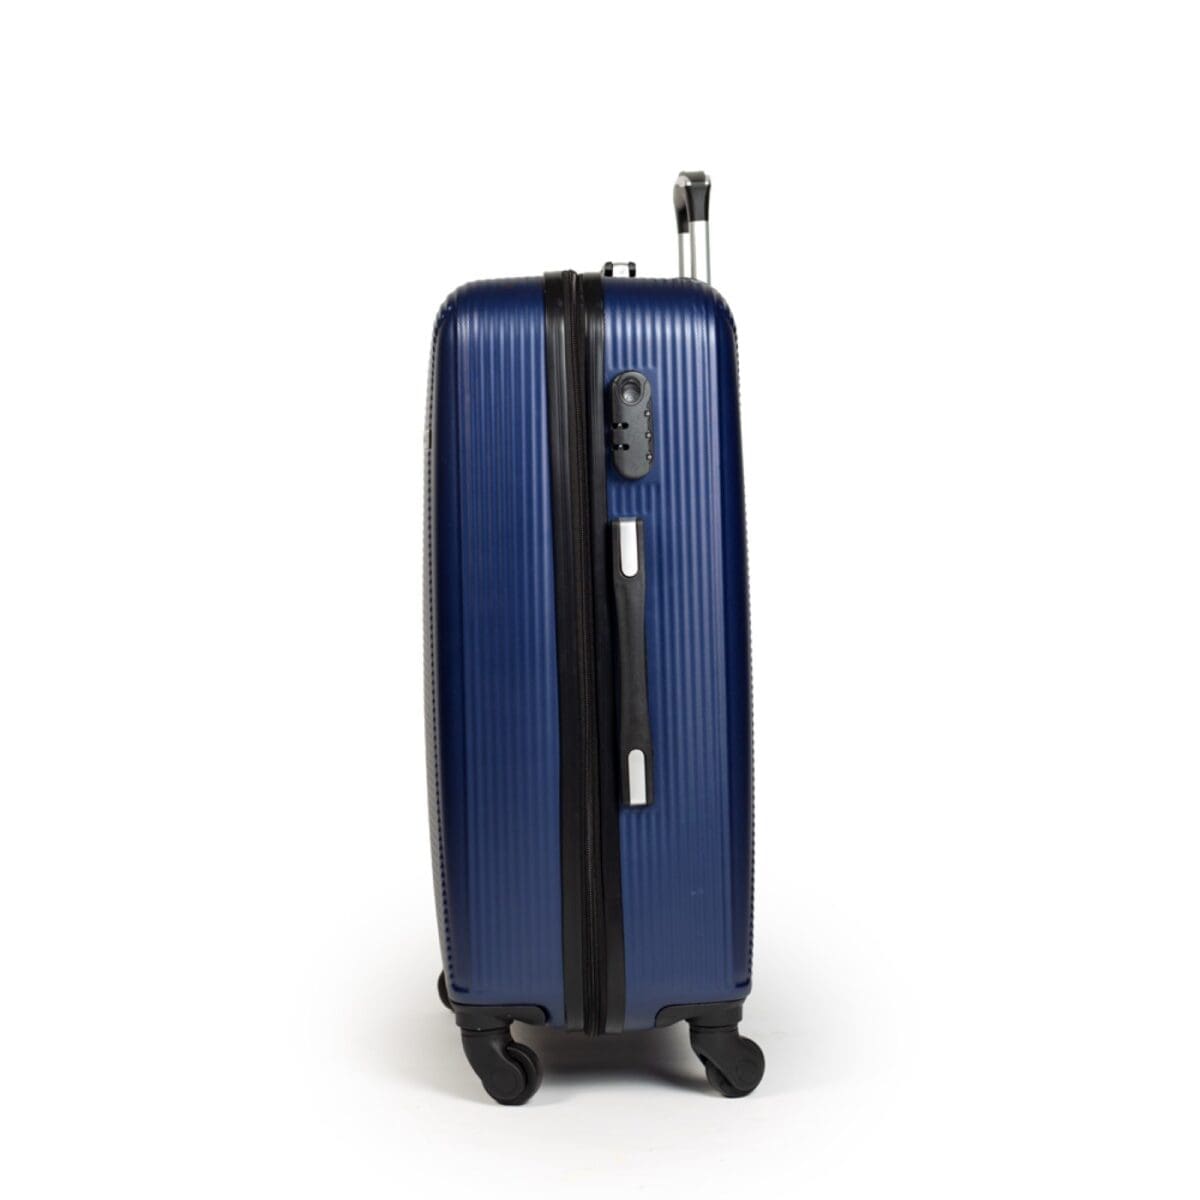 αριστερή πλευρά βαλίτσας σε μπλε χρώμα